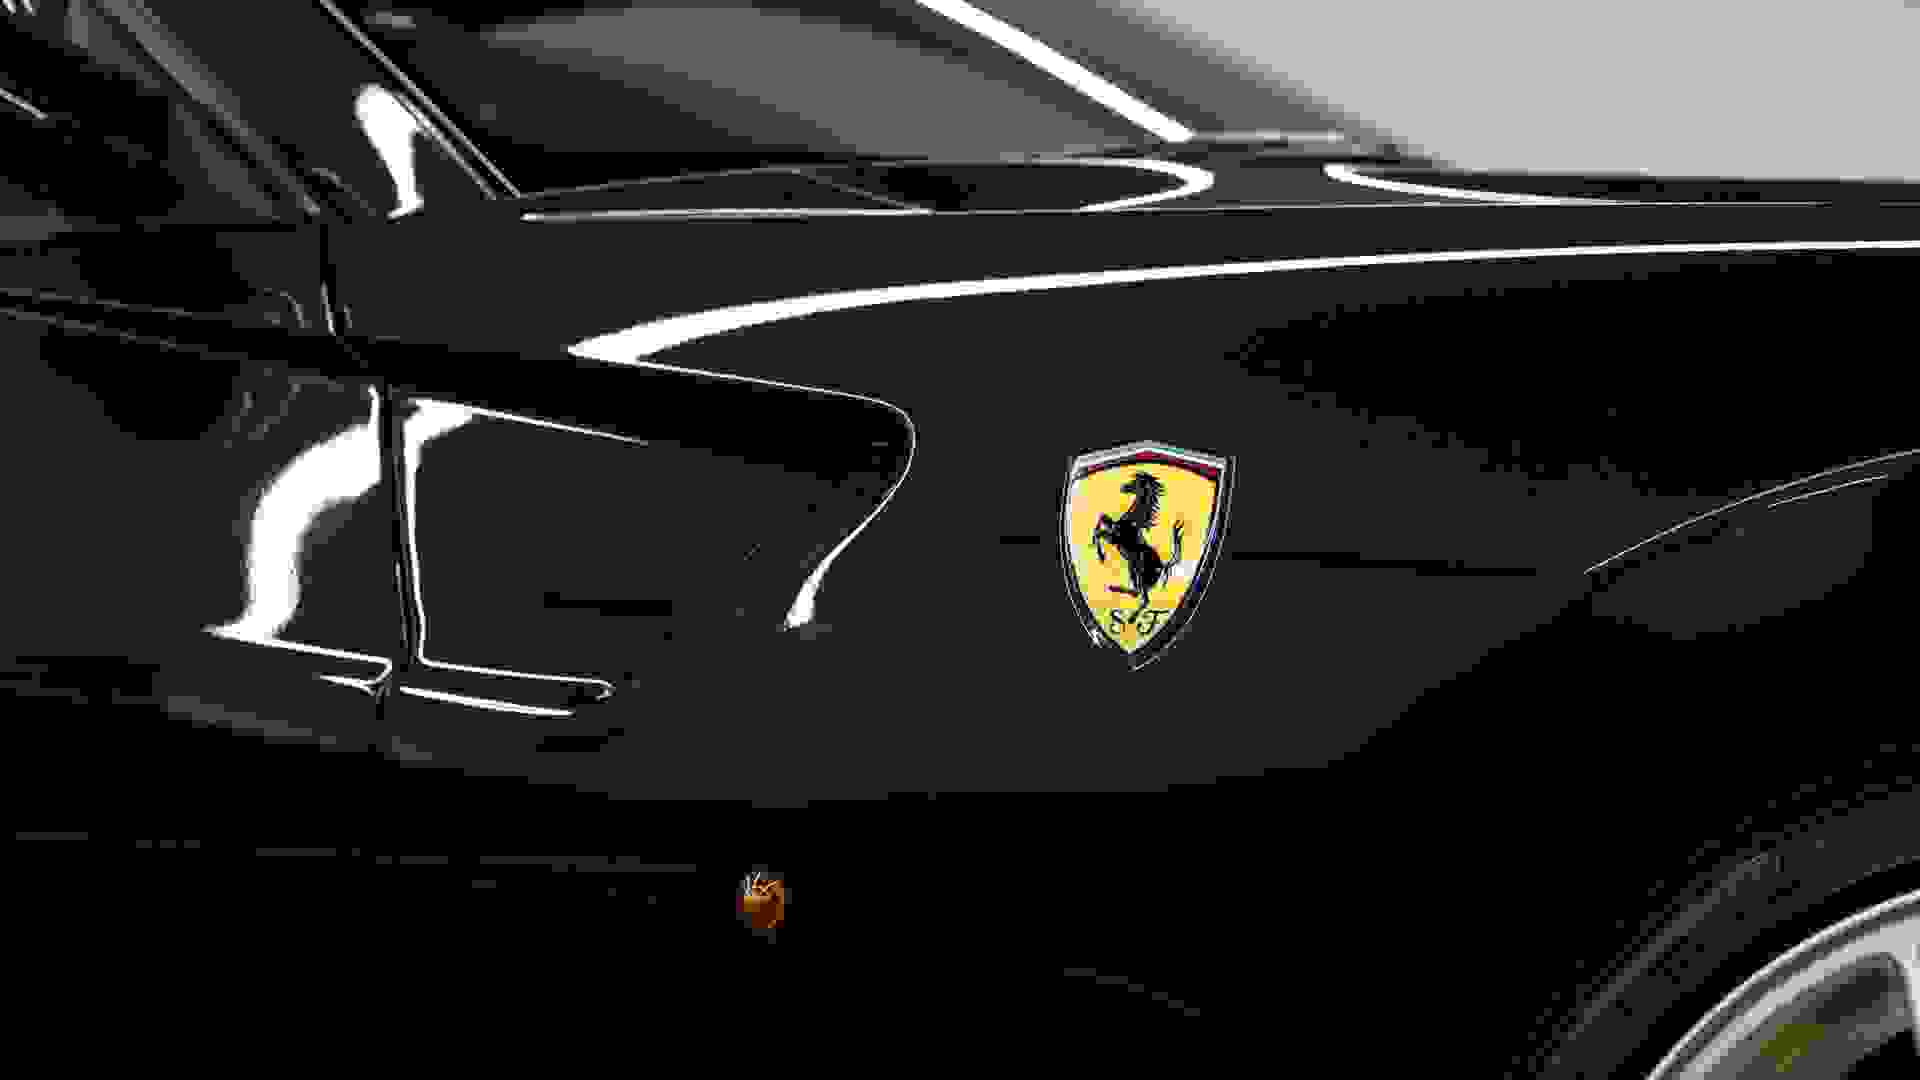 Ferrari 599 Photo 16e428bd-1849-43d5-aca3-5a164415e261.jpg